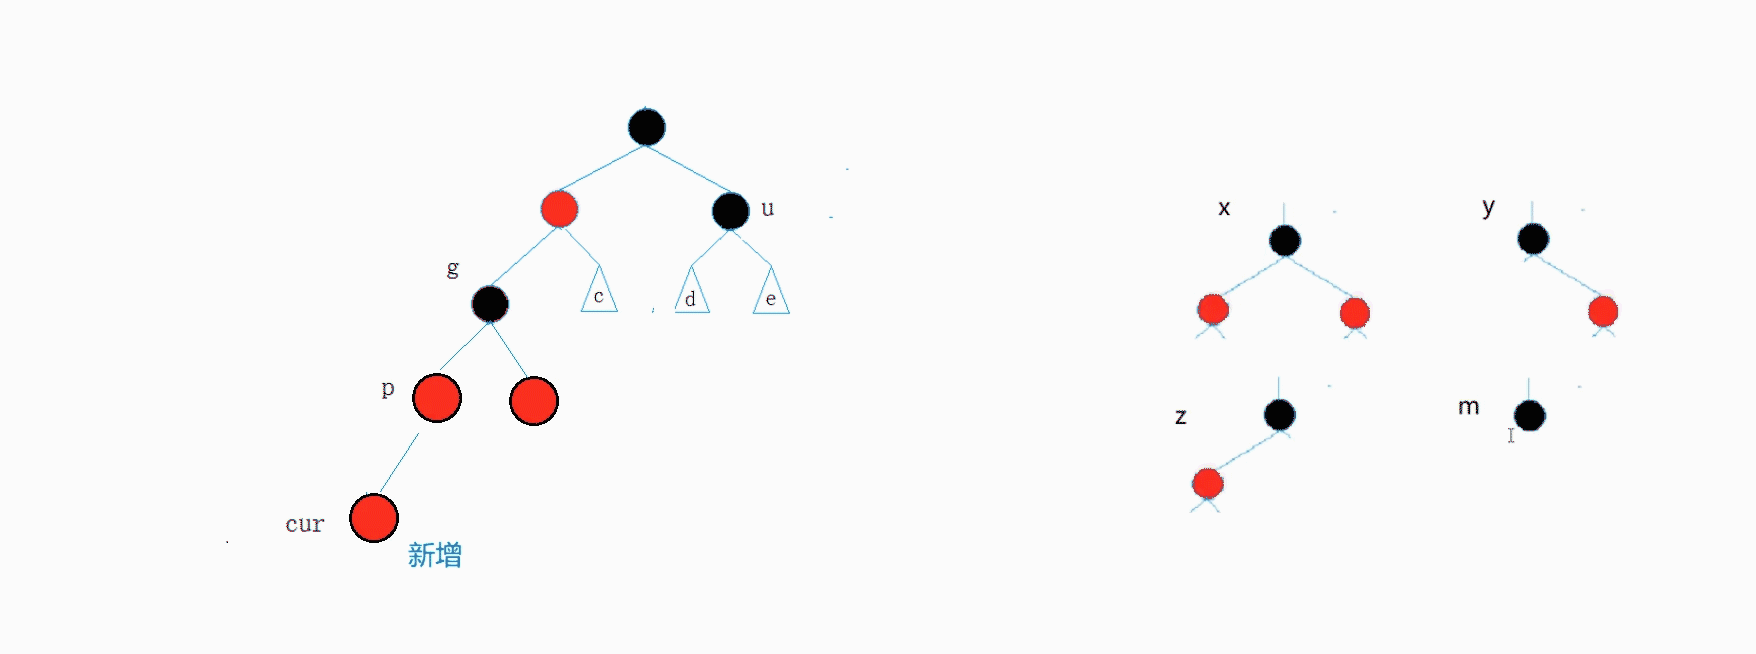 AVL树和红黑树的模拟实现_搜索二叉树_33